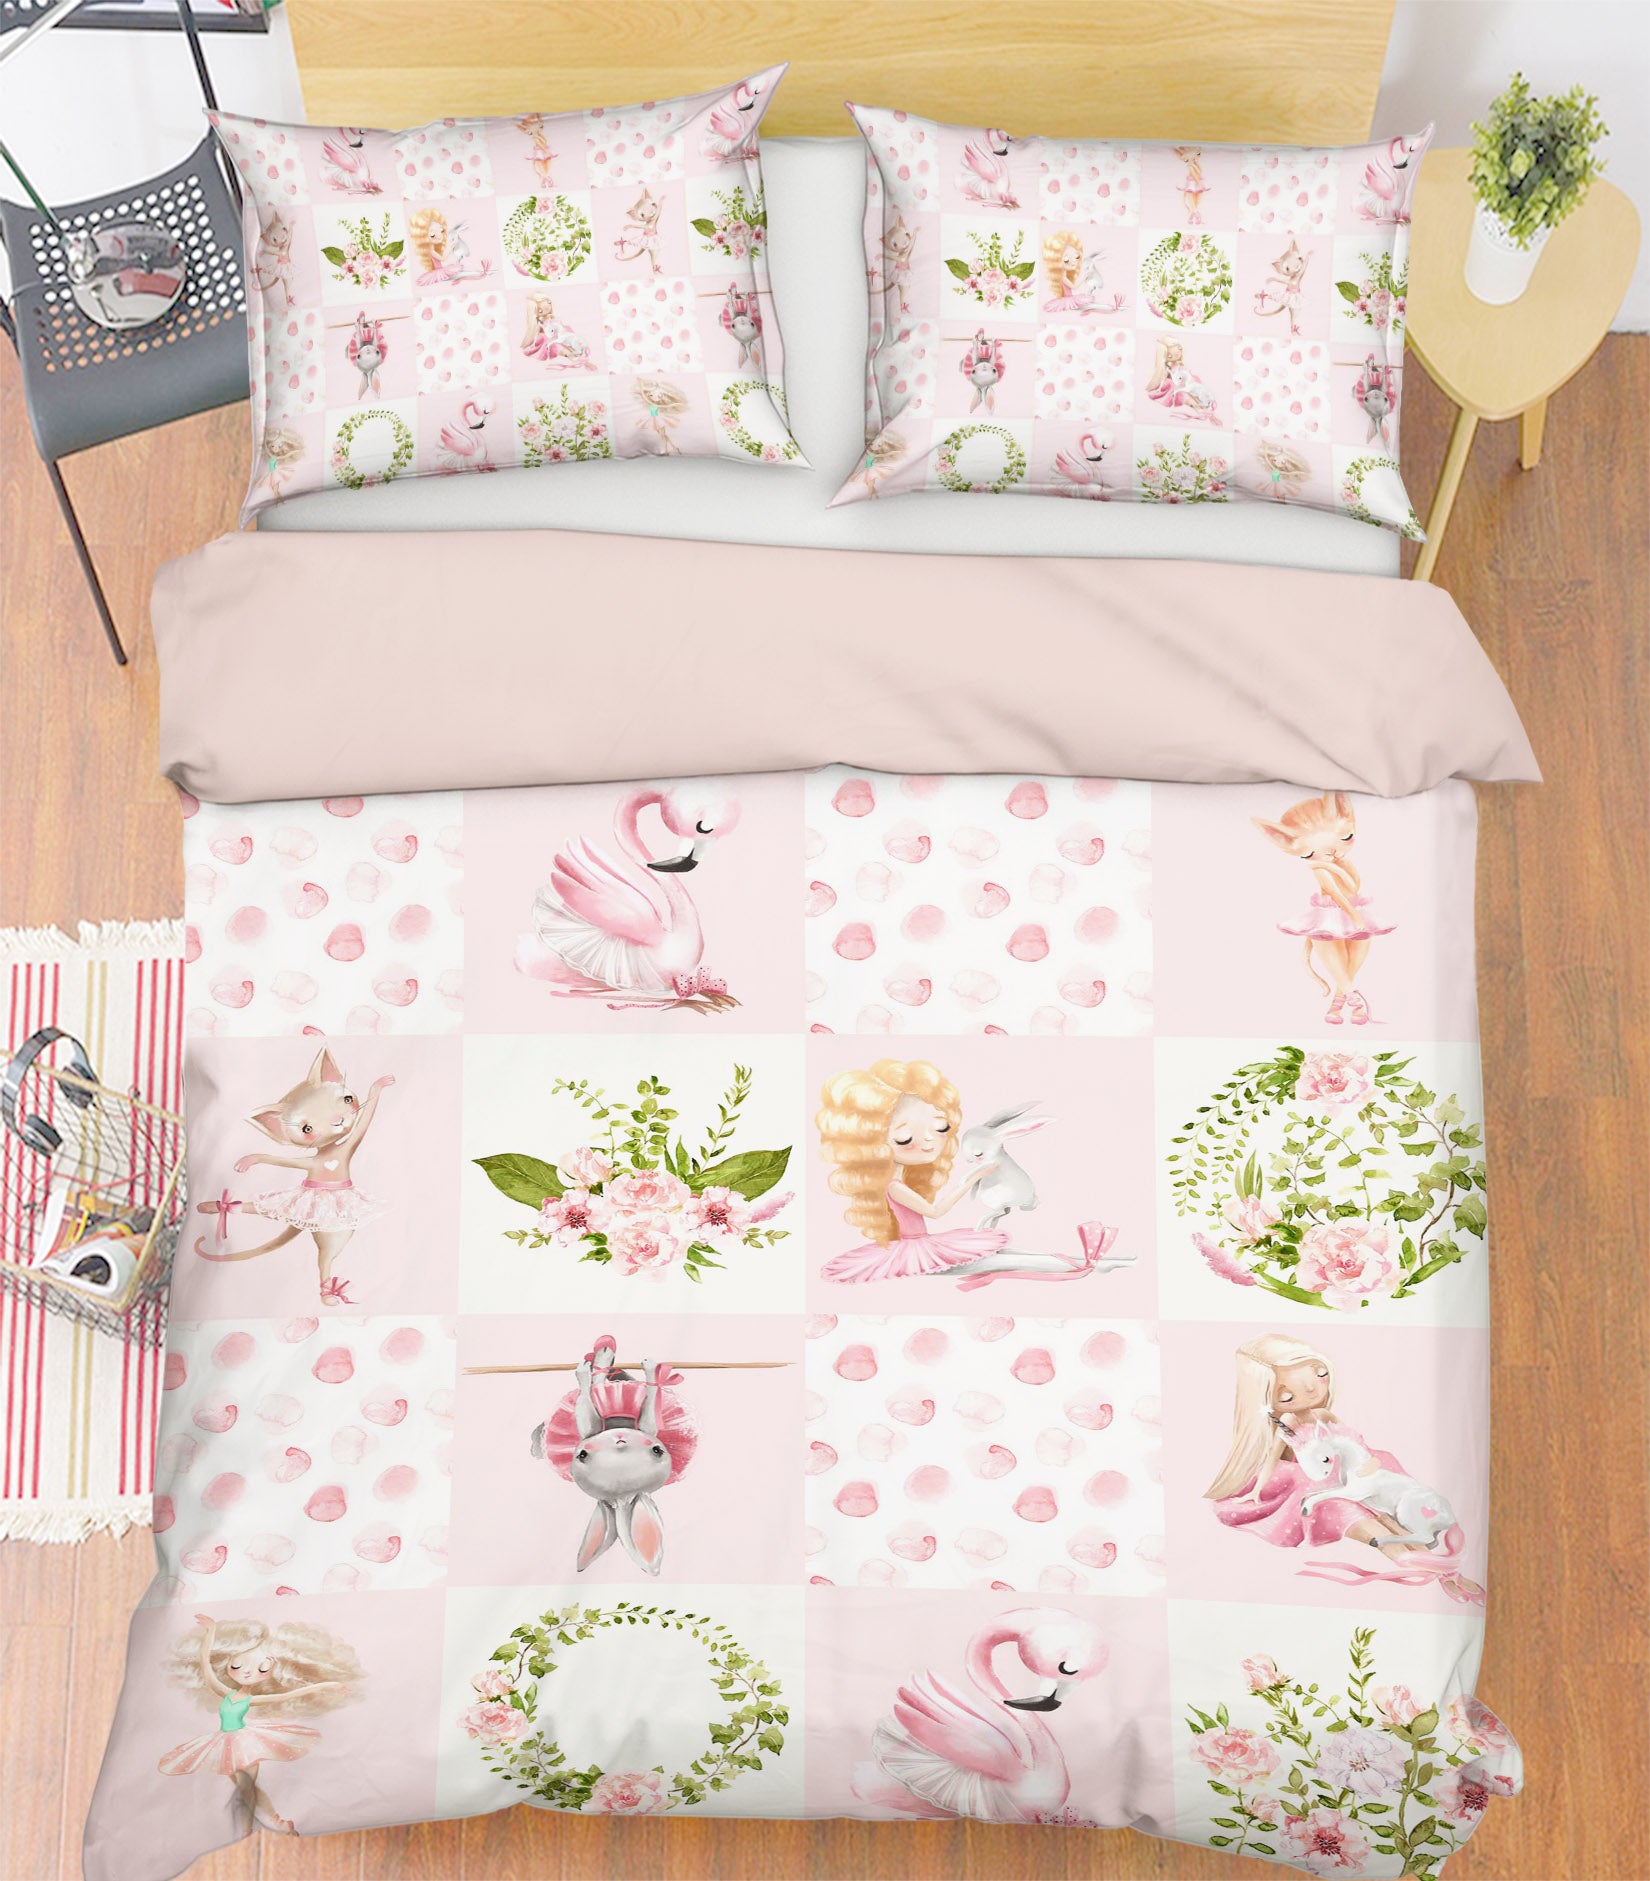 3D Flamingo Rabbit 204 Uta Naumann Bedding Bed Pillowcases Quilt